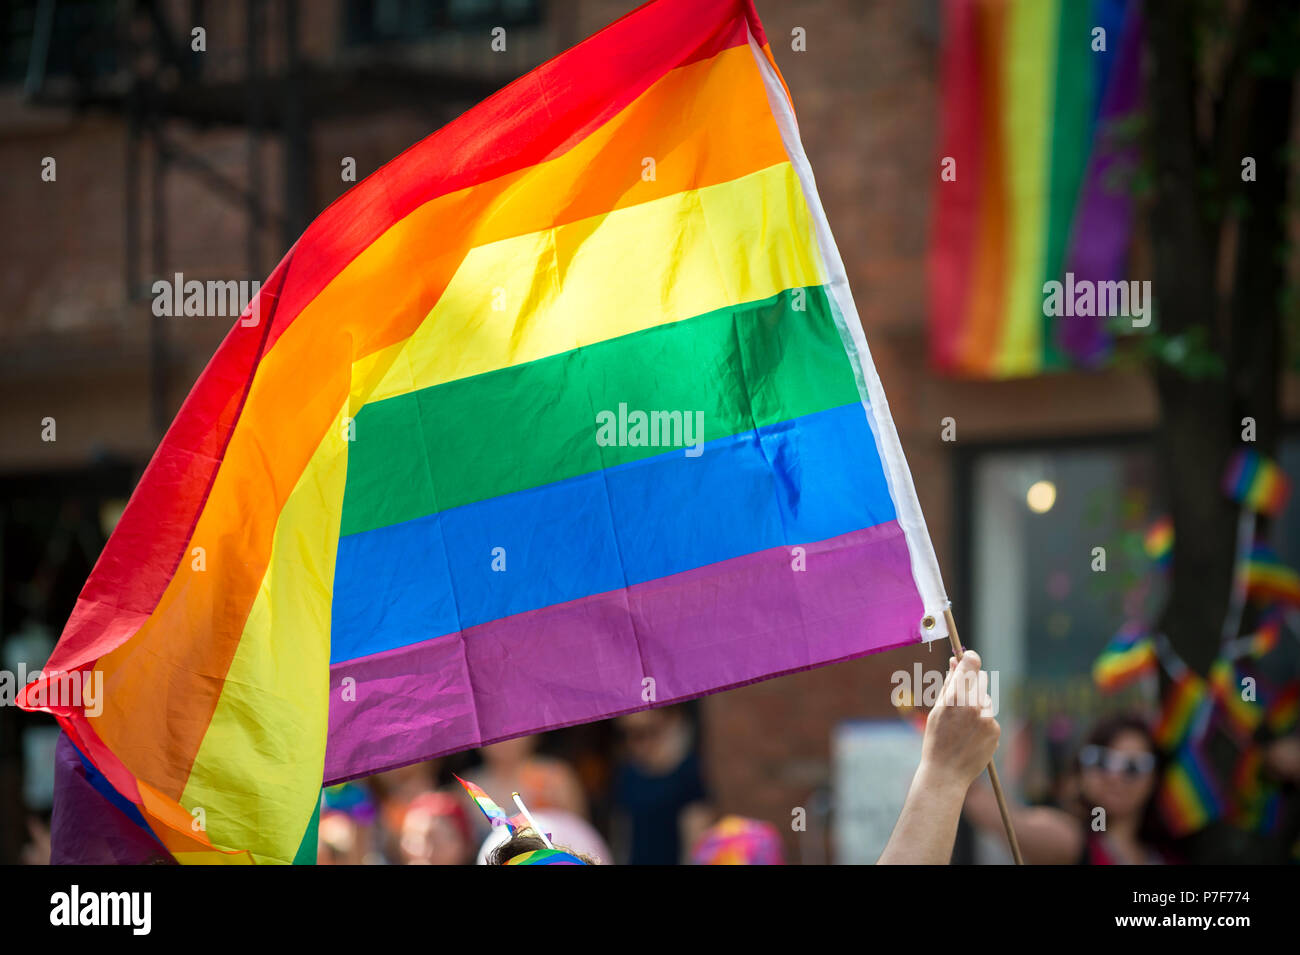 Participante con grande retroiluminada bandera del arco iris en el Desfile del Orgullo Gay anual como pasa por Greenwich Village. Foto de stock